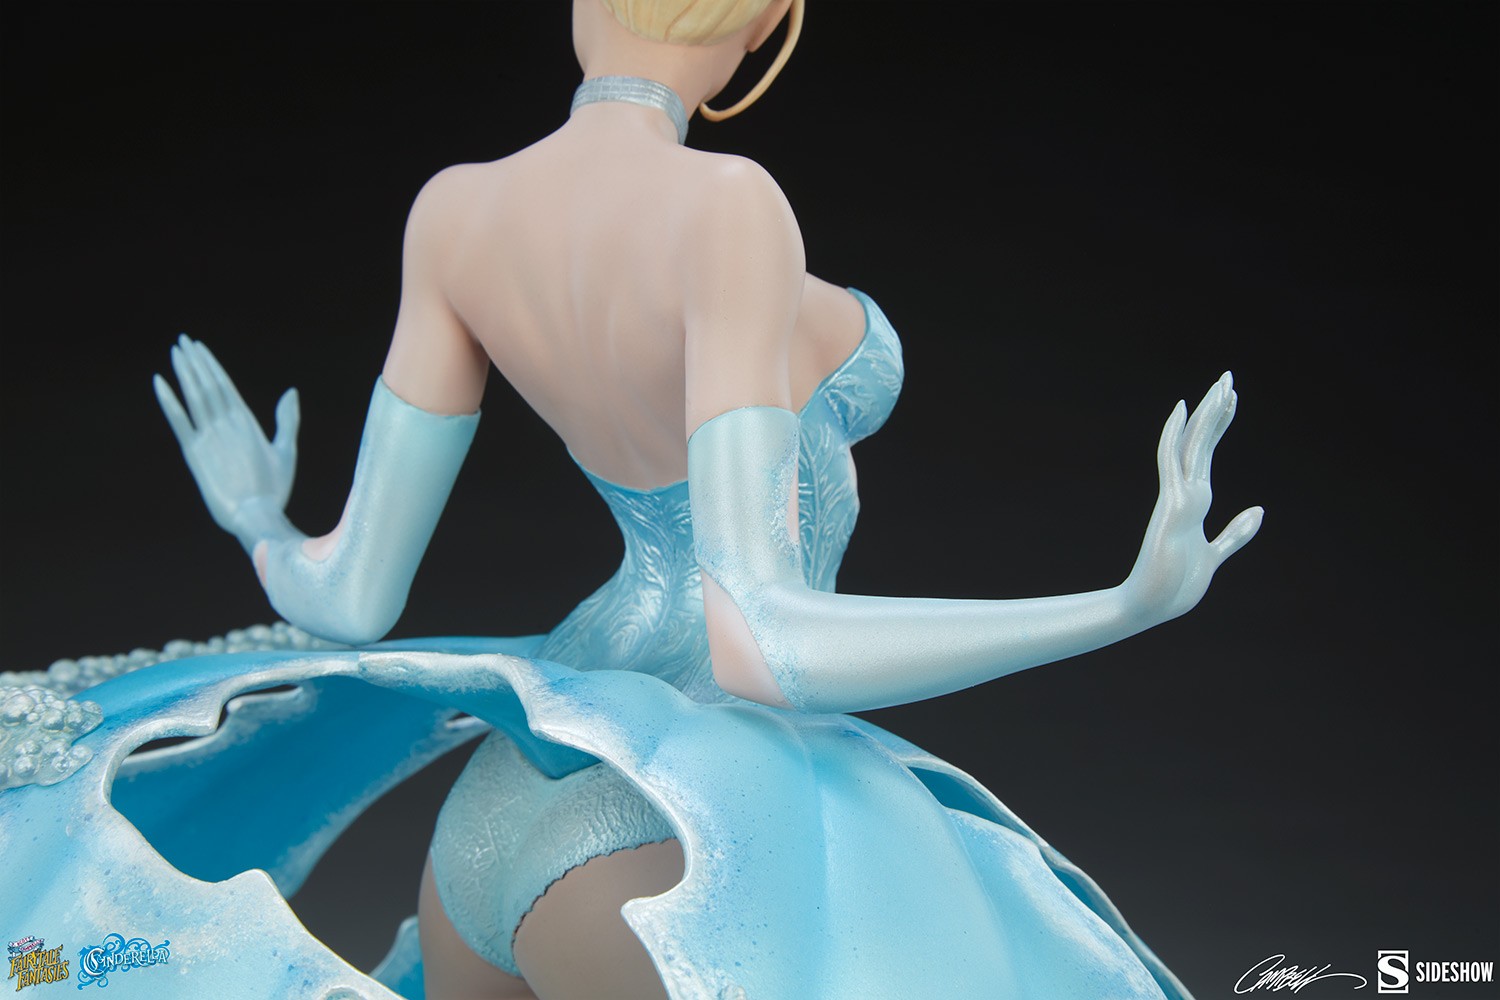 Cinderella Collector Edition - Prototype Shown